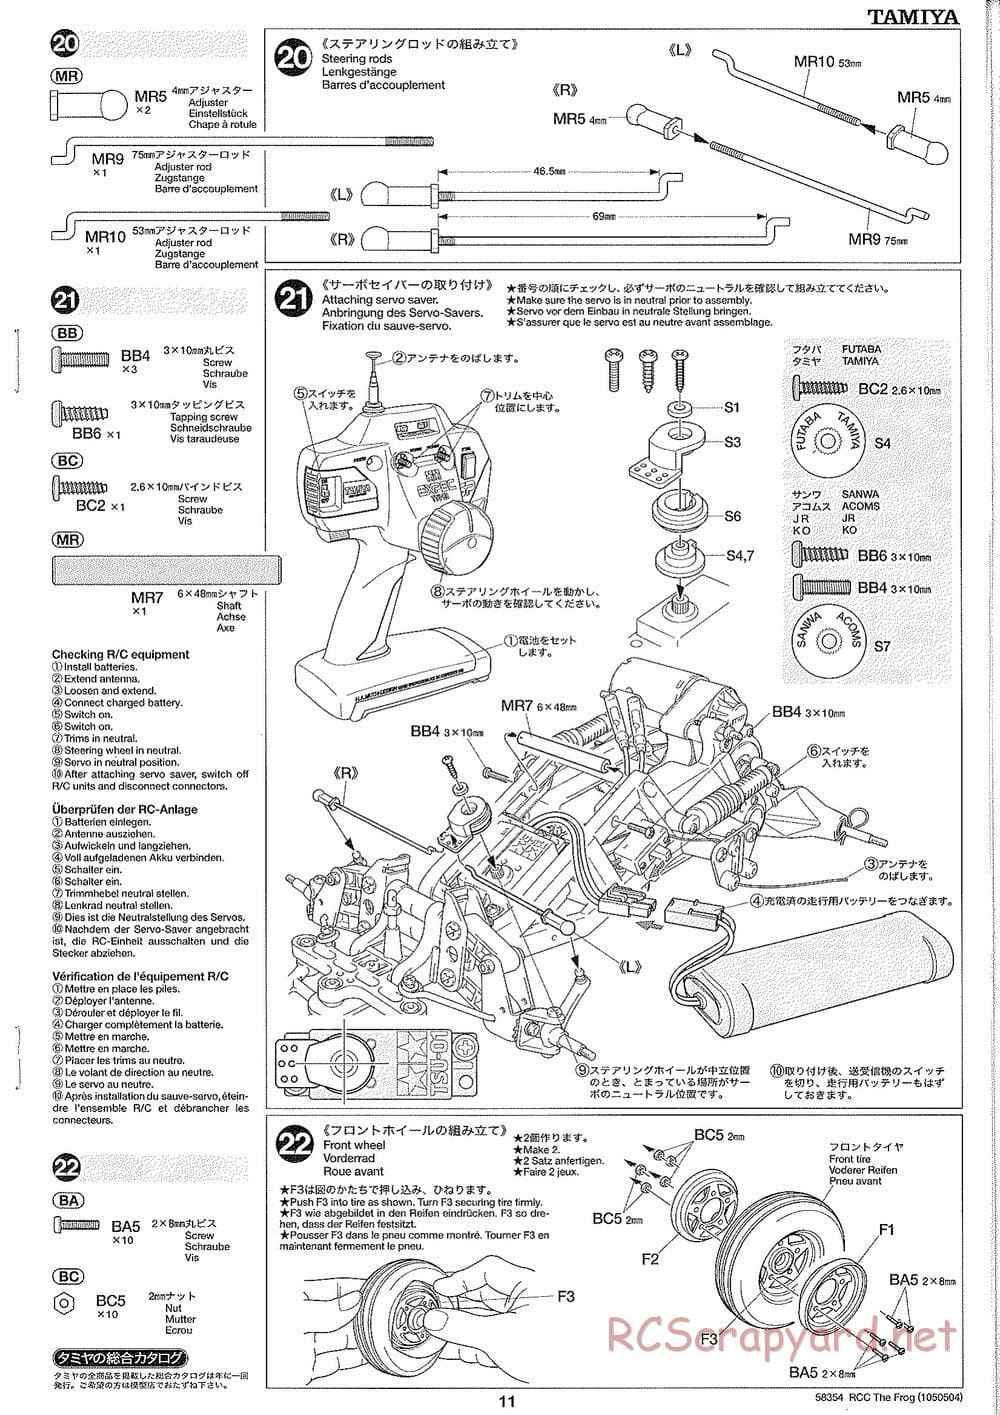 Tamiya - The Frog - 2005 - ORV Chassis - Manual - Page 11